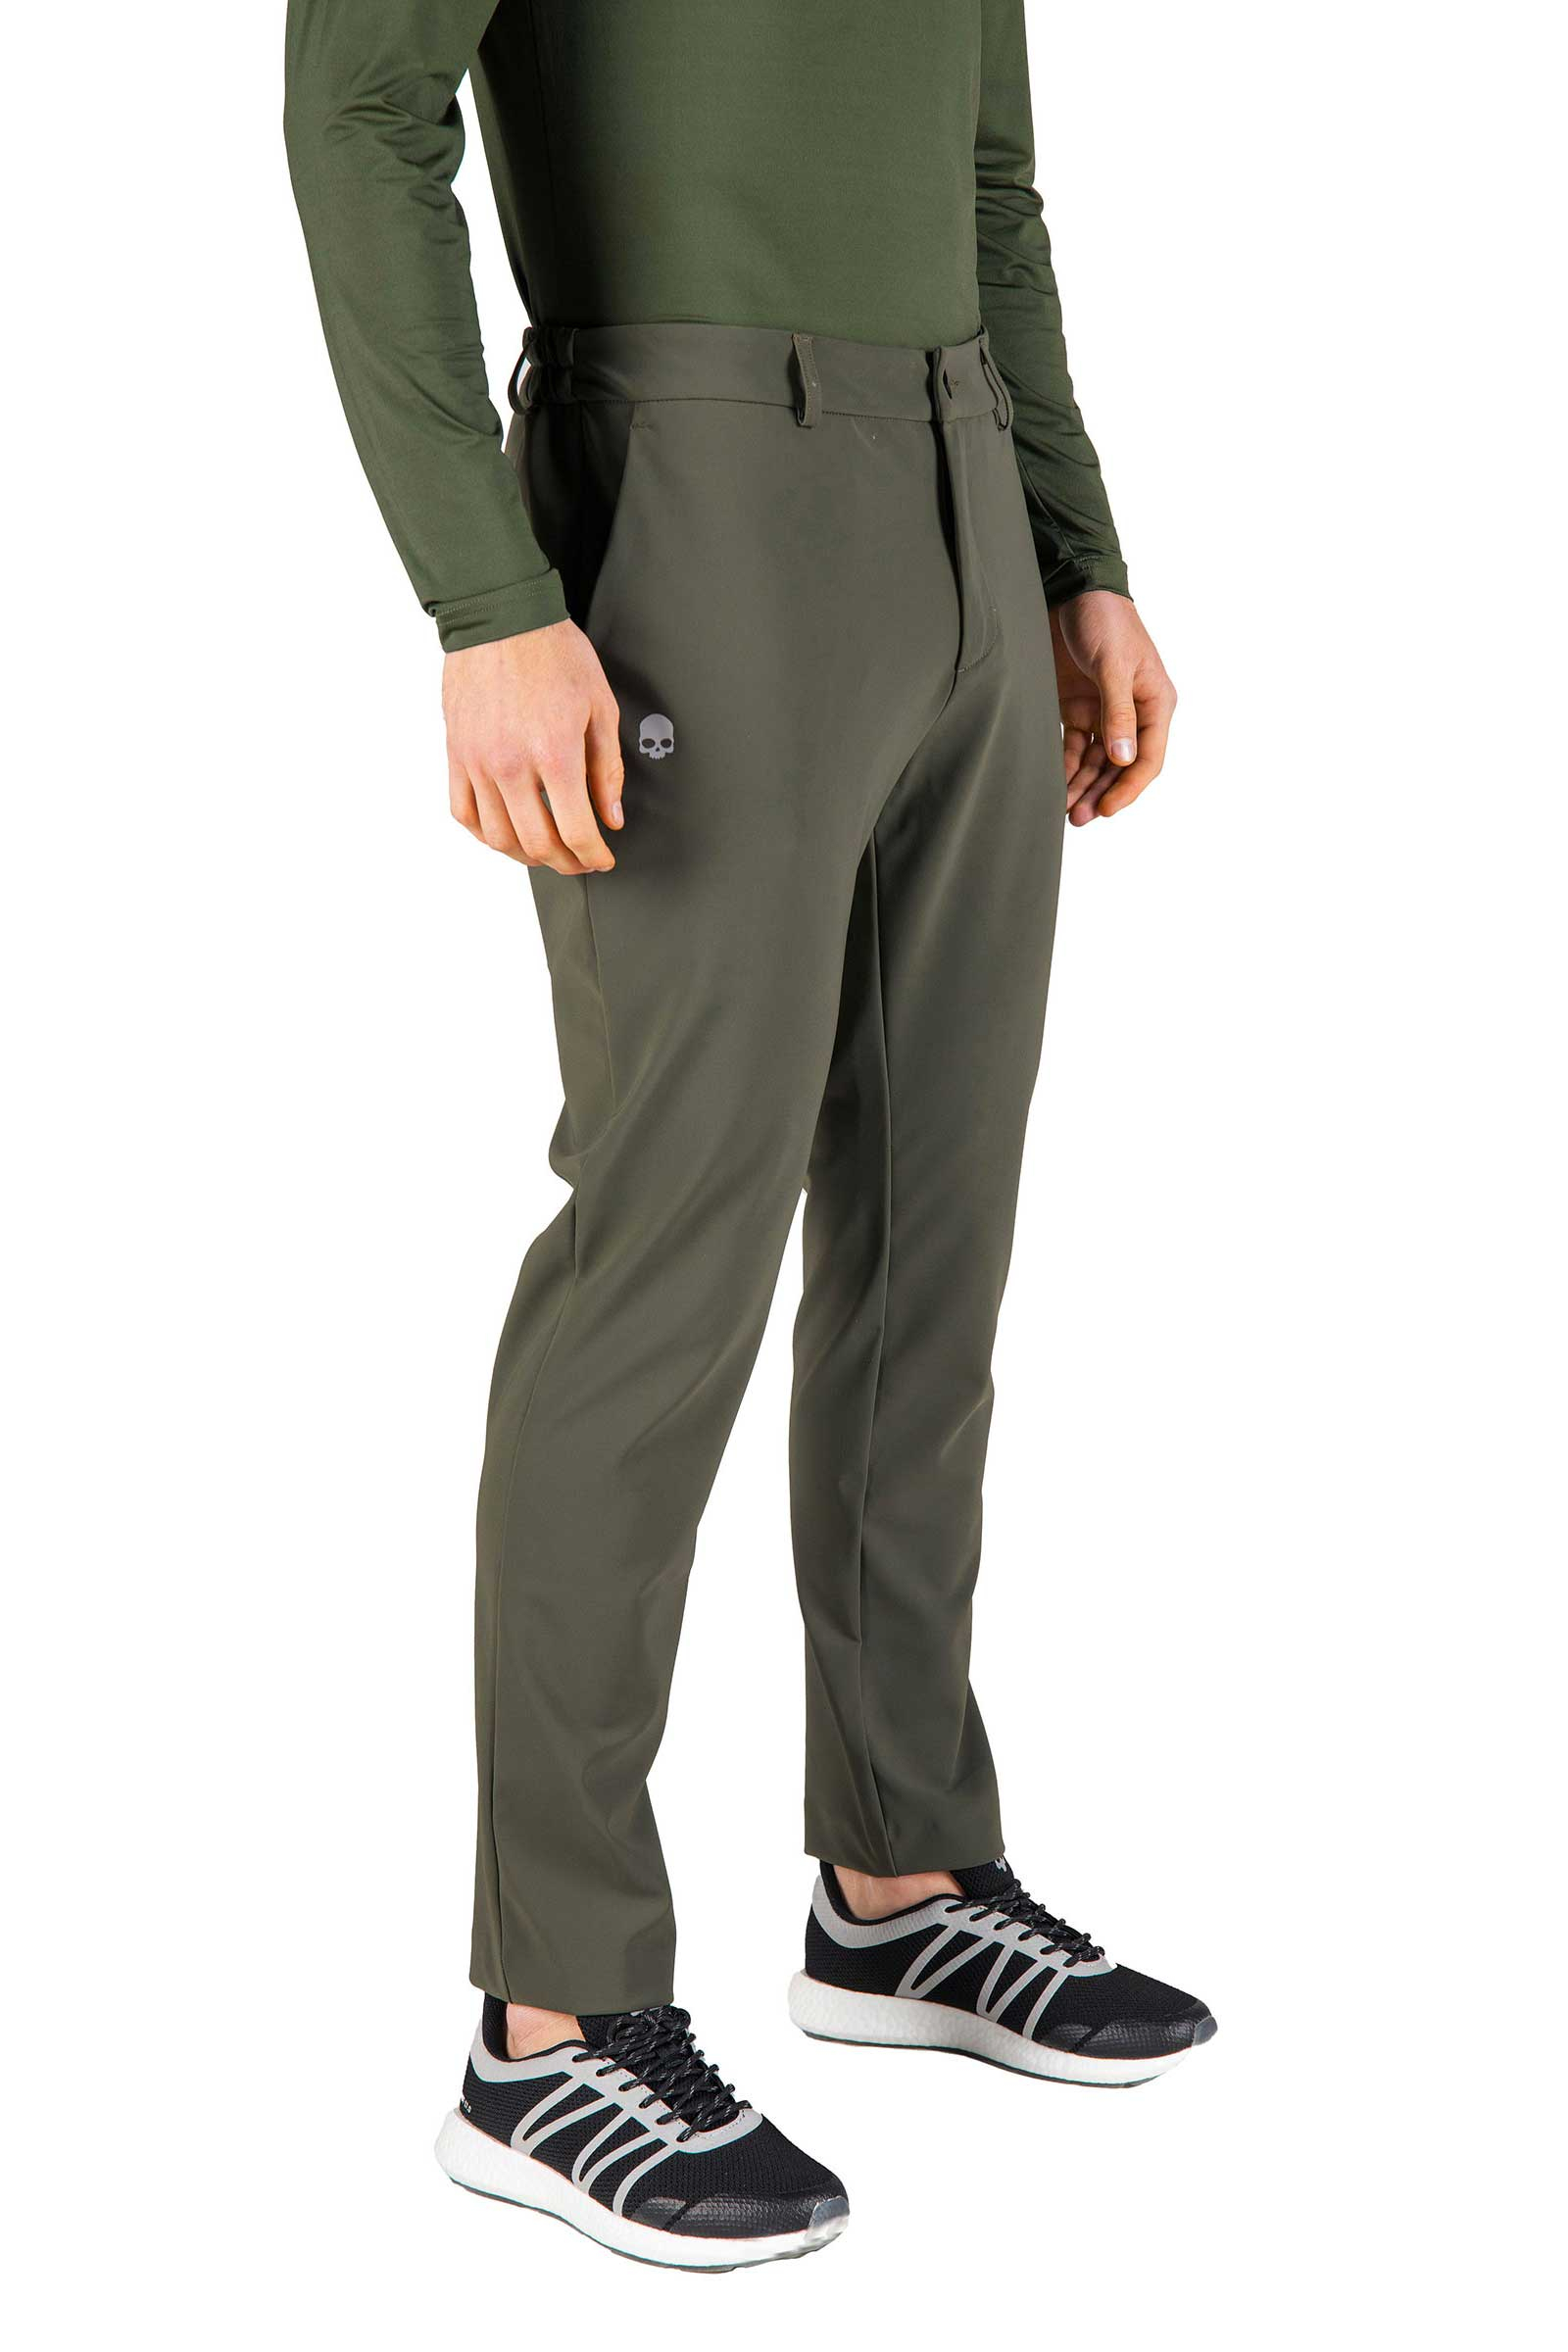 WINTER GOLF TECH PANTS - Apparel - Outlet Hydrogen - Luxury Sportwear